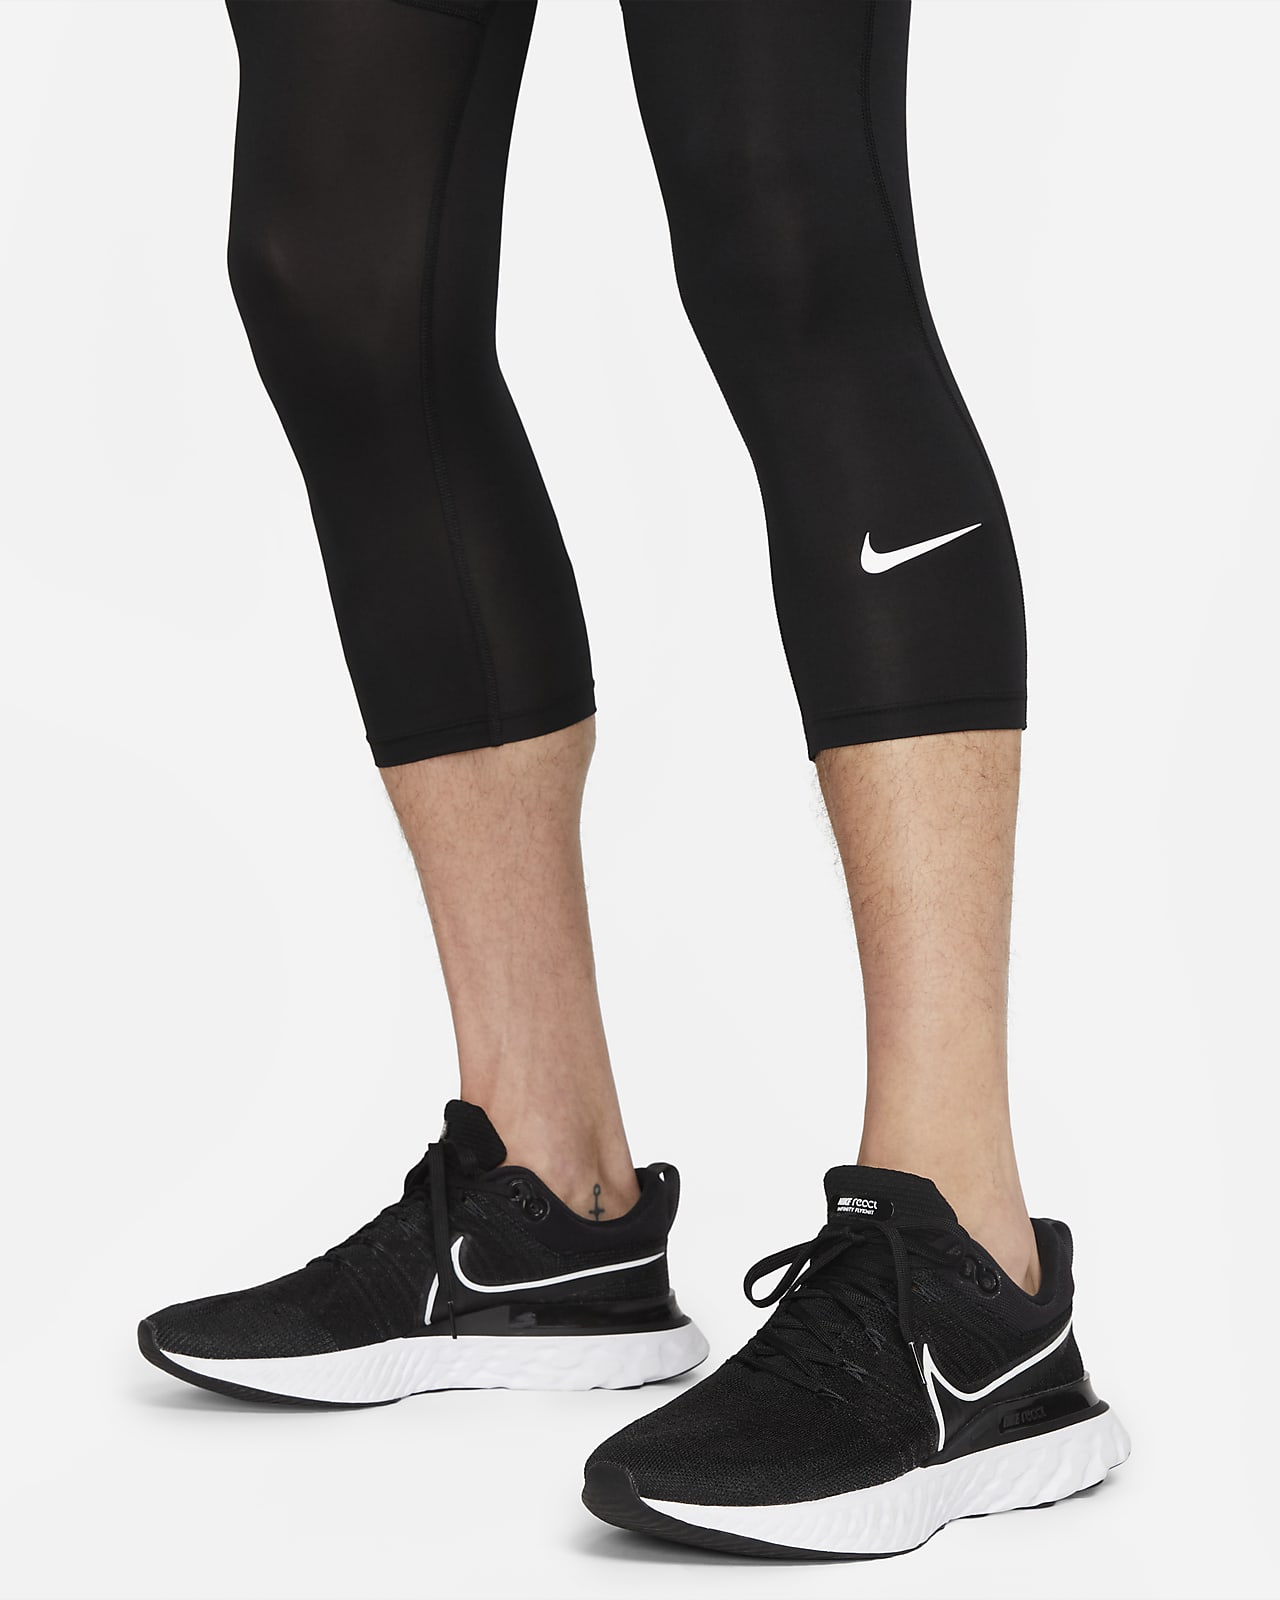 Nike Pro Dri Fit 3/4 Tight Black